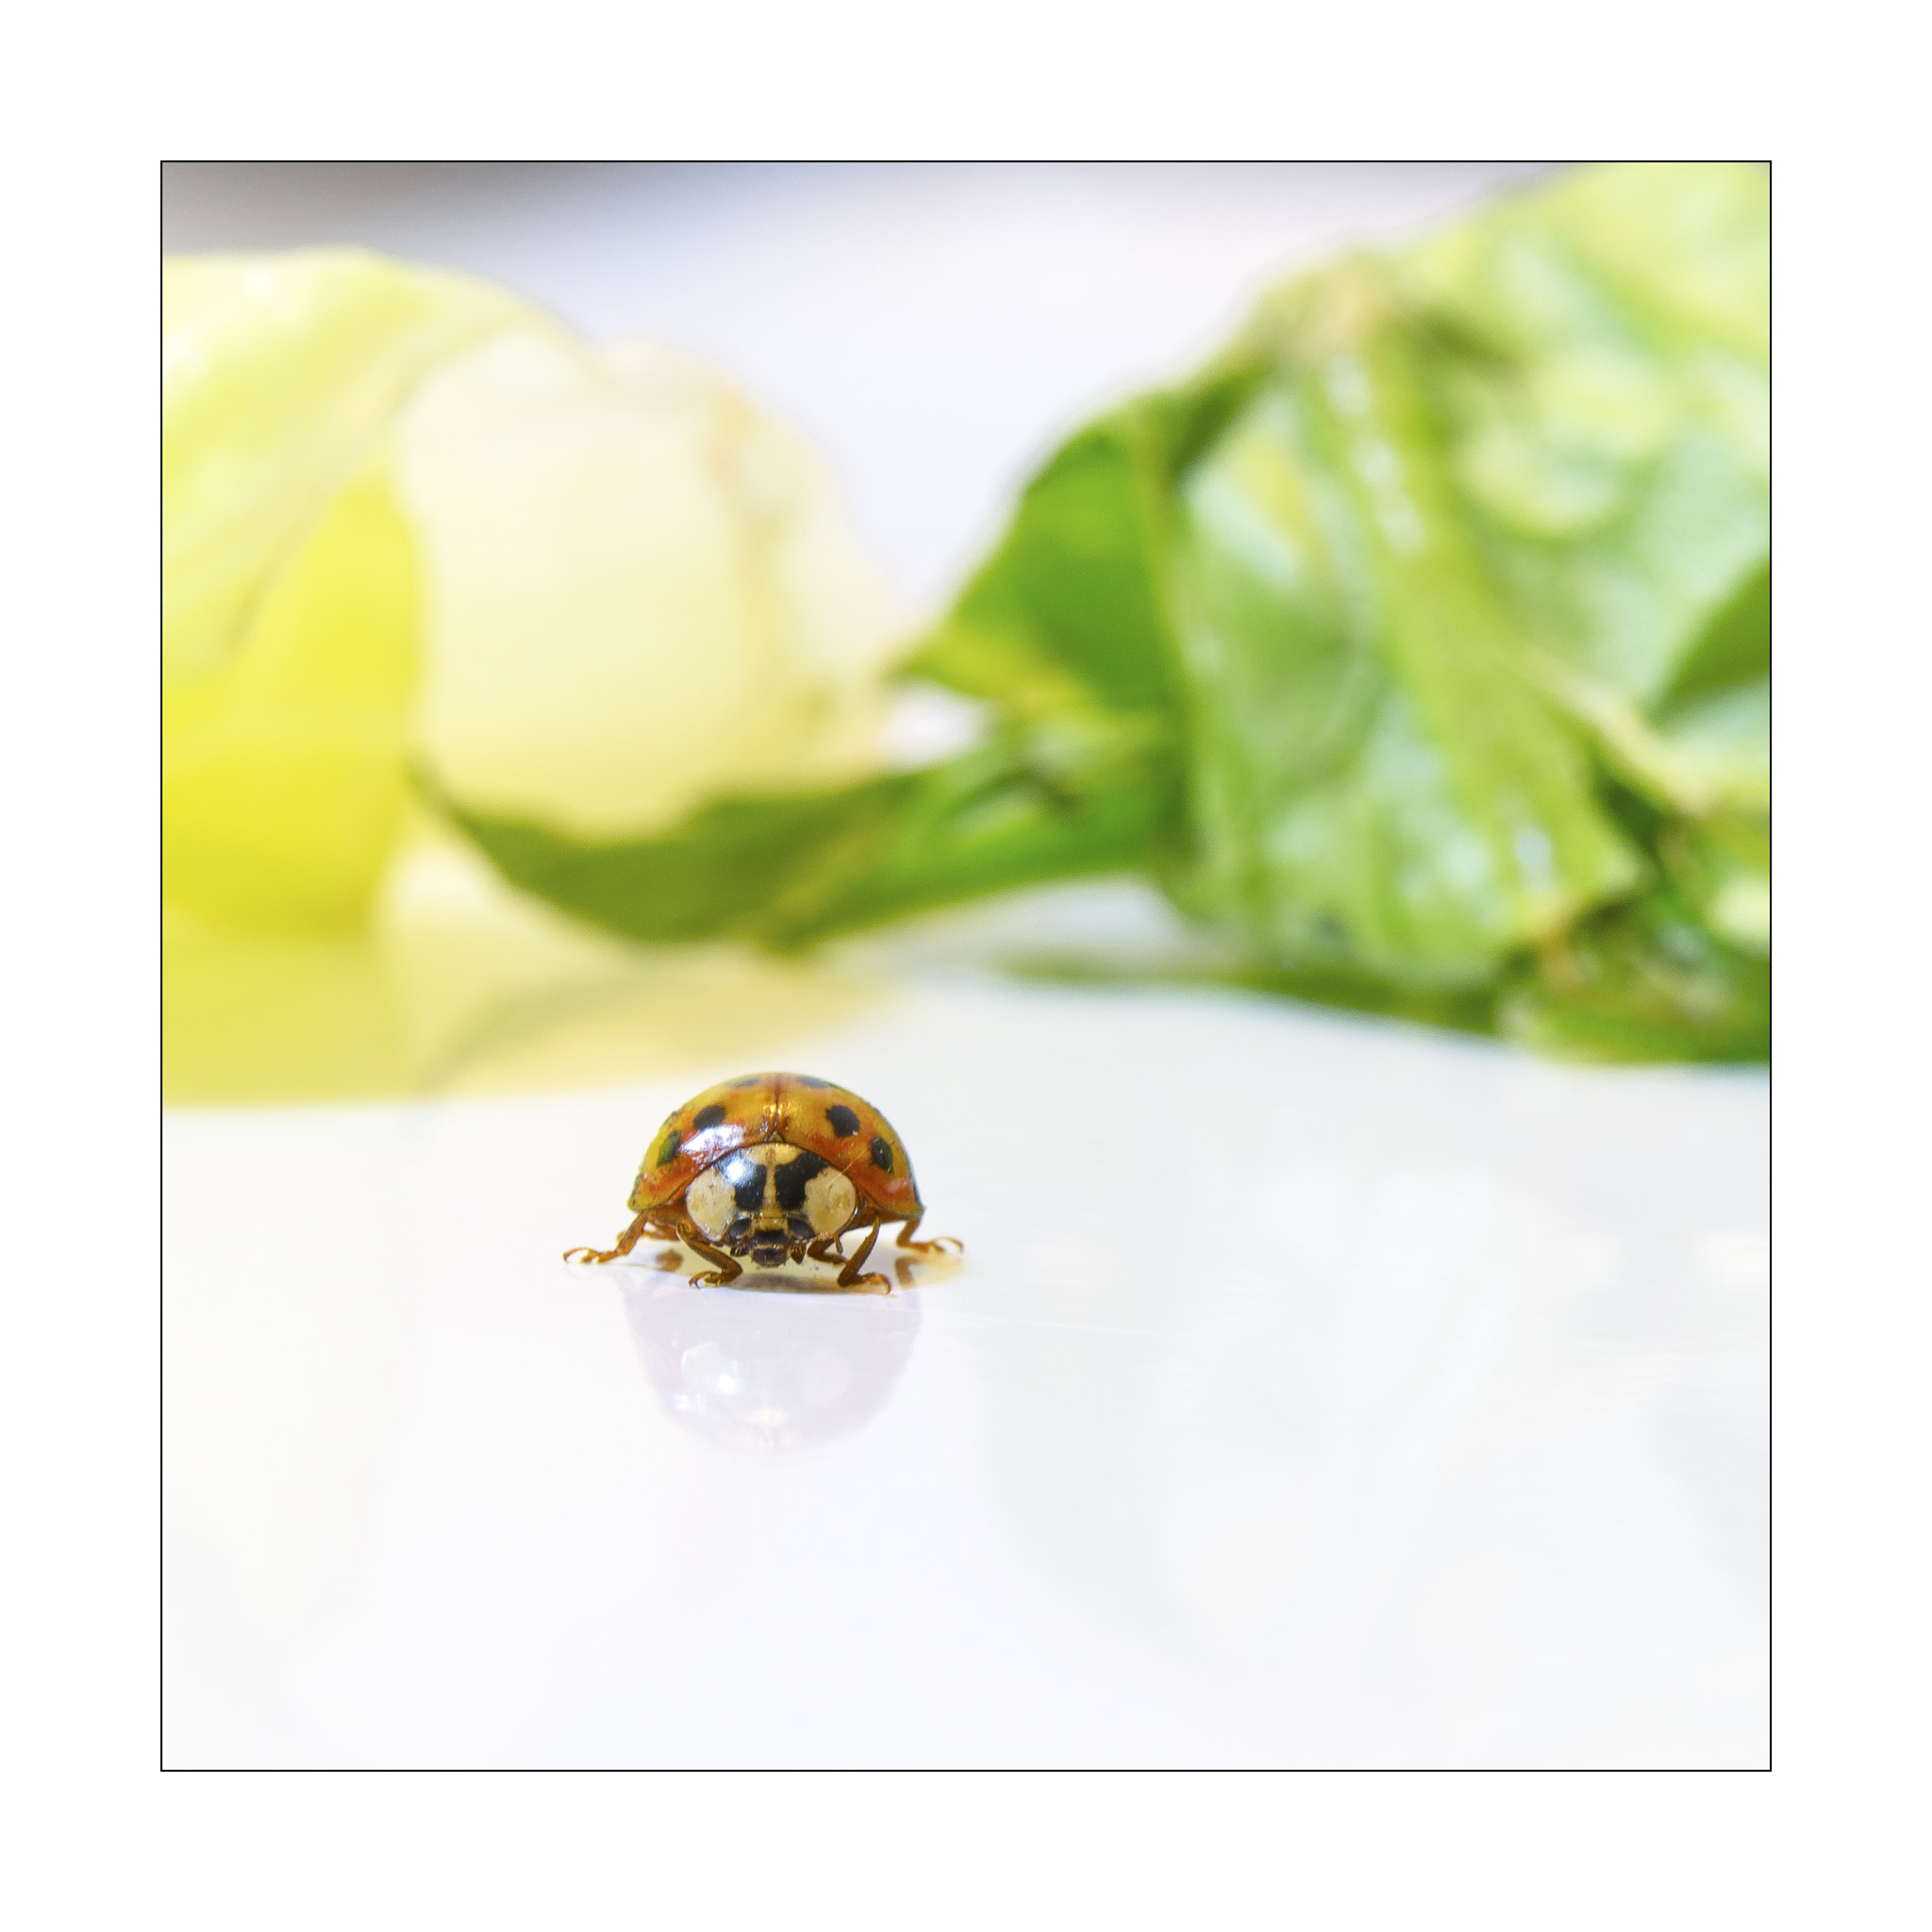 Nikon D7000 sample photo. A ladybug (like a mushroom head? ^^) photography